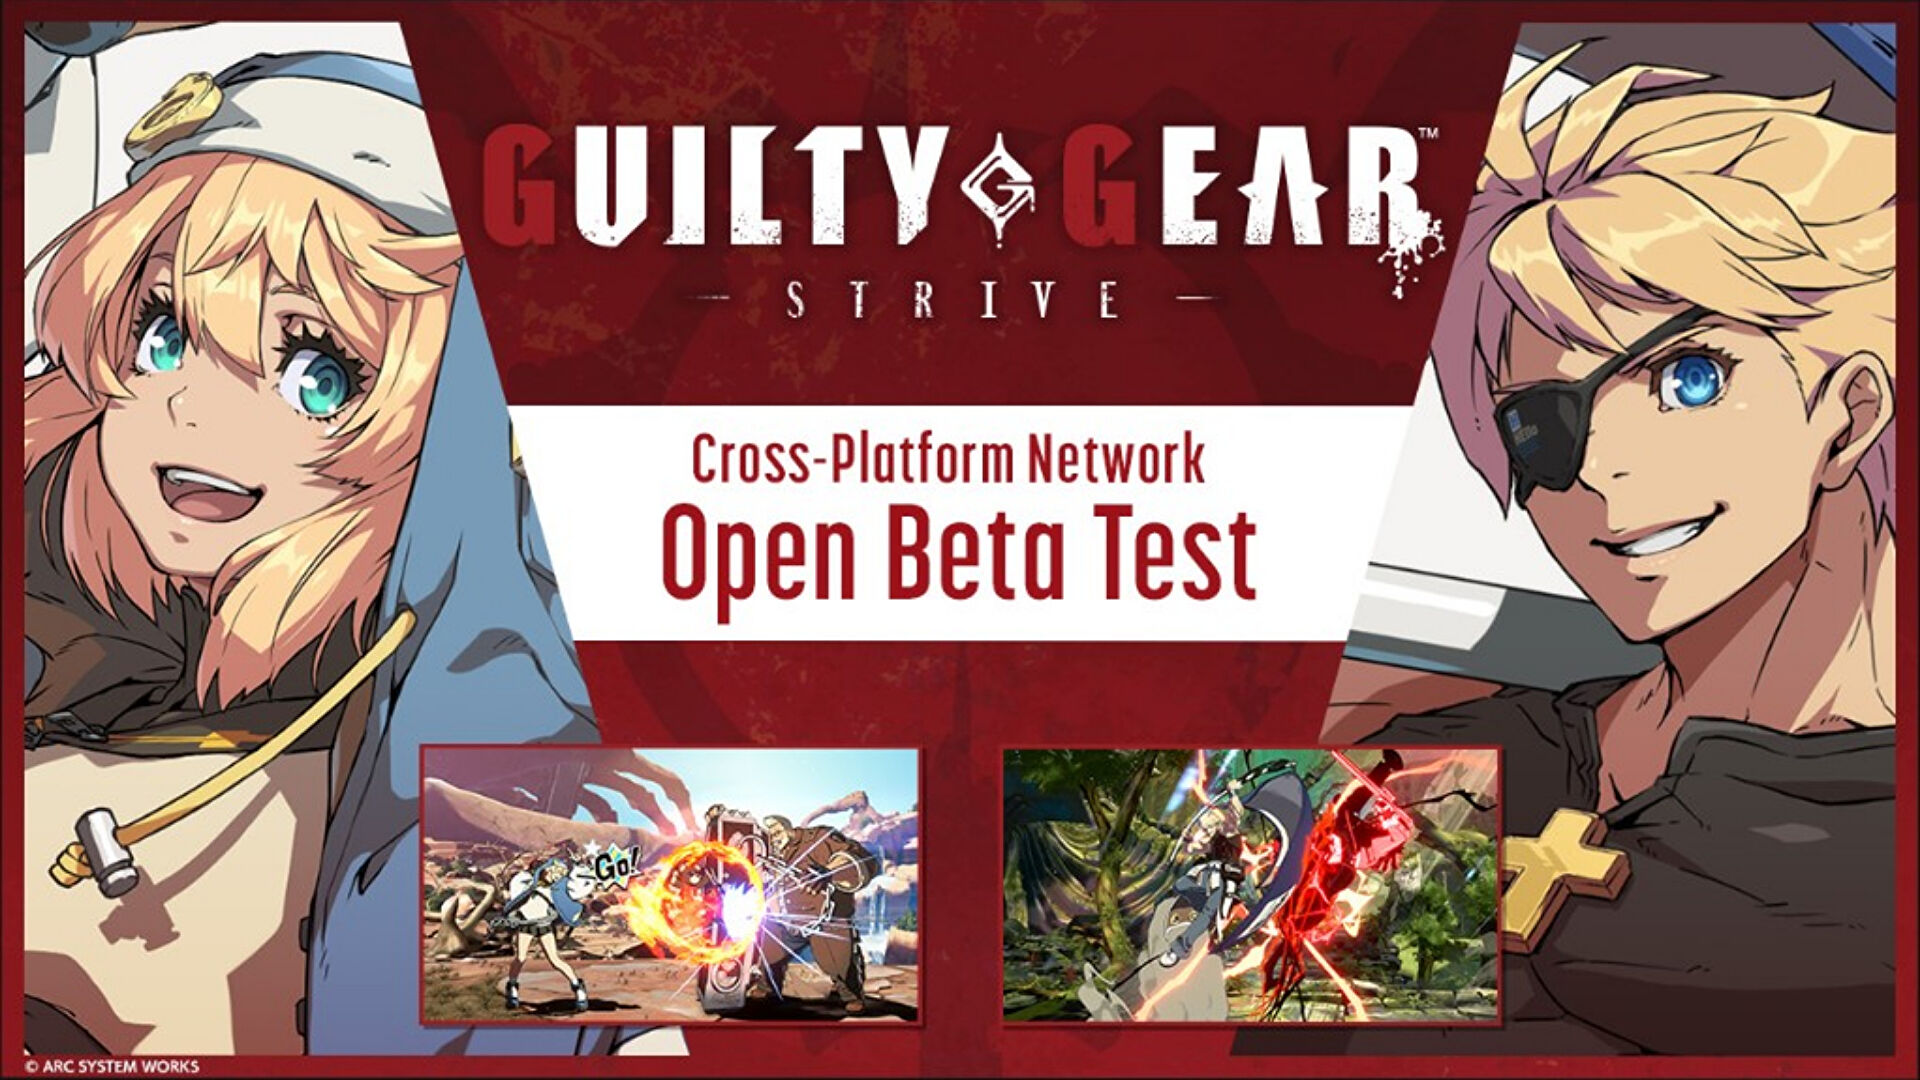 Guilty Gear Strive‘s cross-platform open beta test begins in February